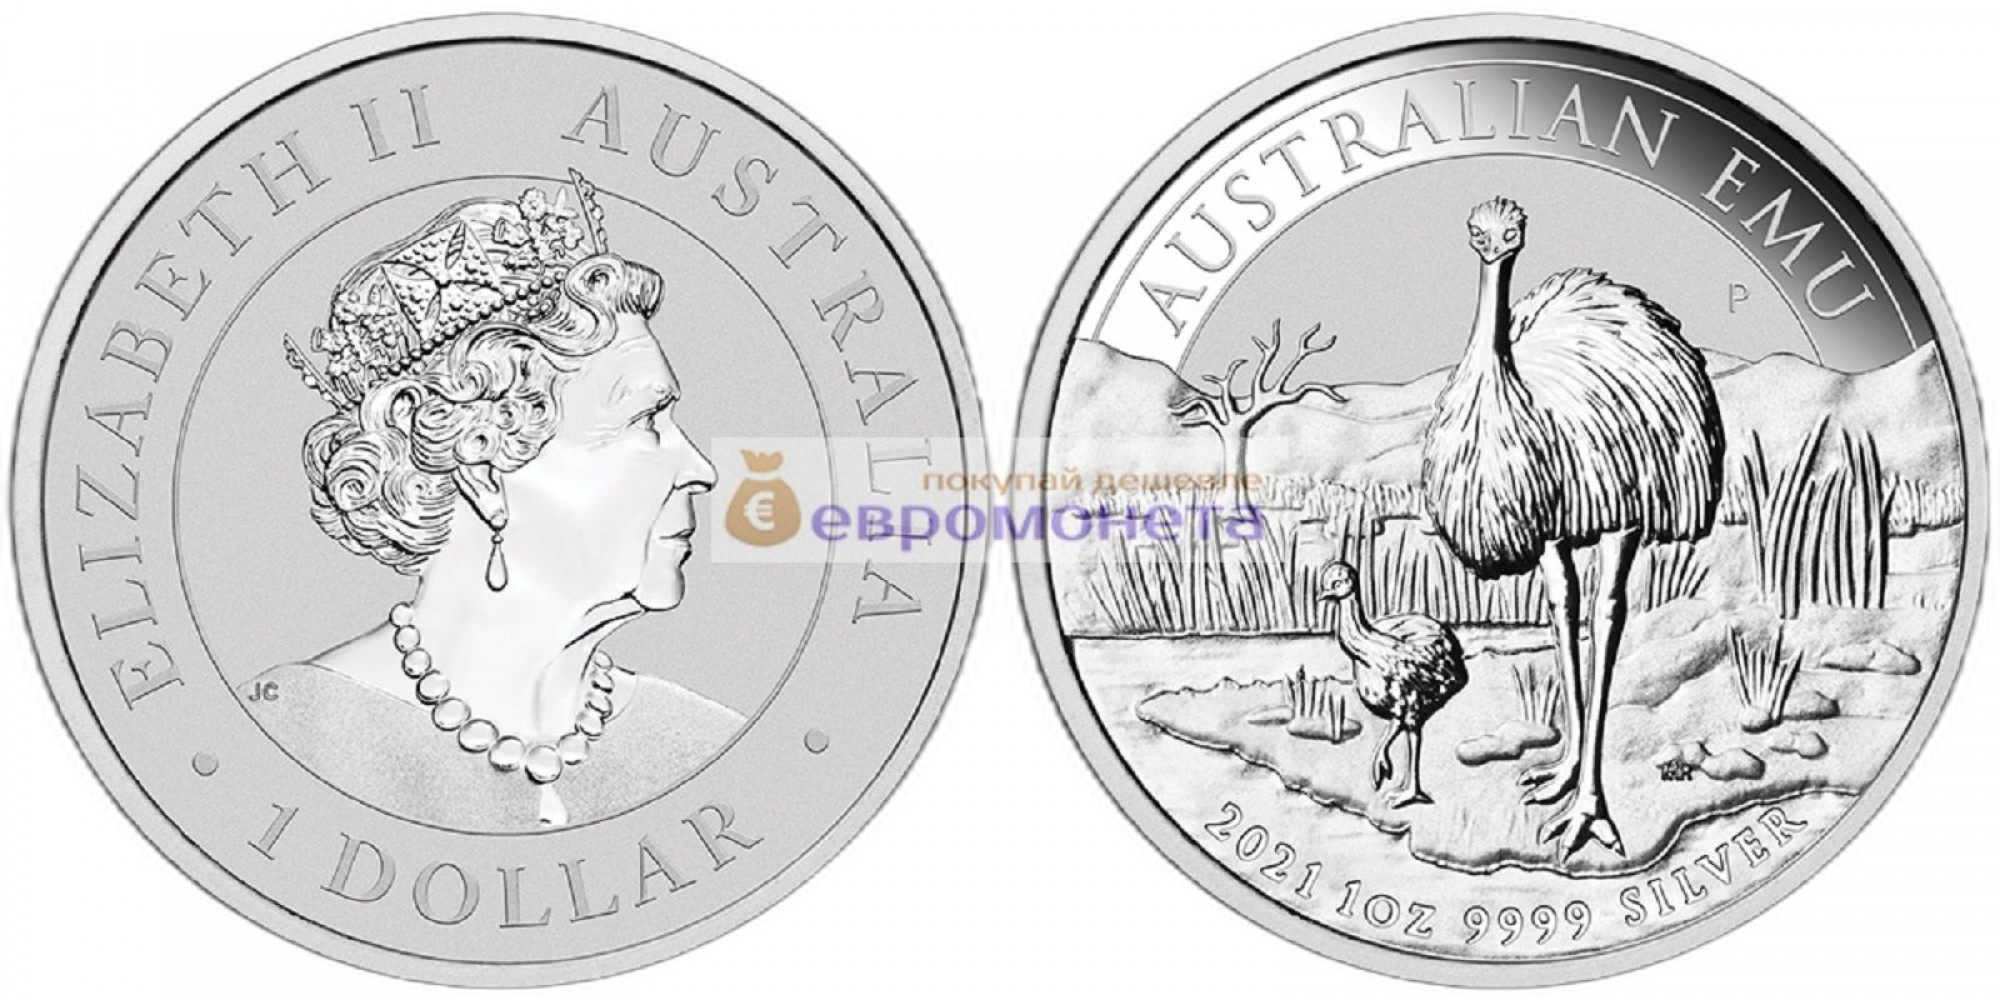 Австралия 1 доллар 2021 год Австралийский Эму. Серебро унция 999 пробы. Тираж 30 000 шт.